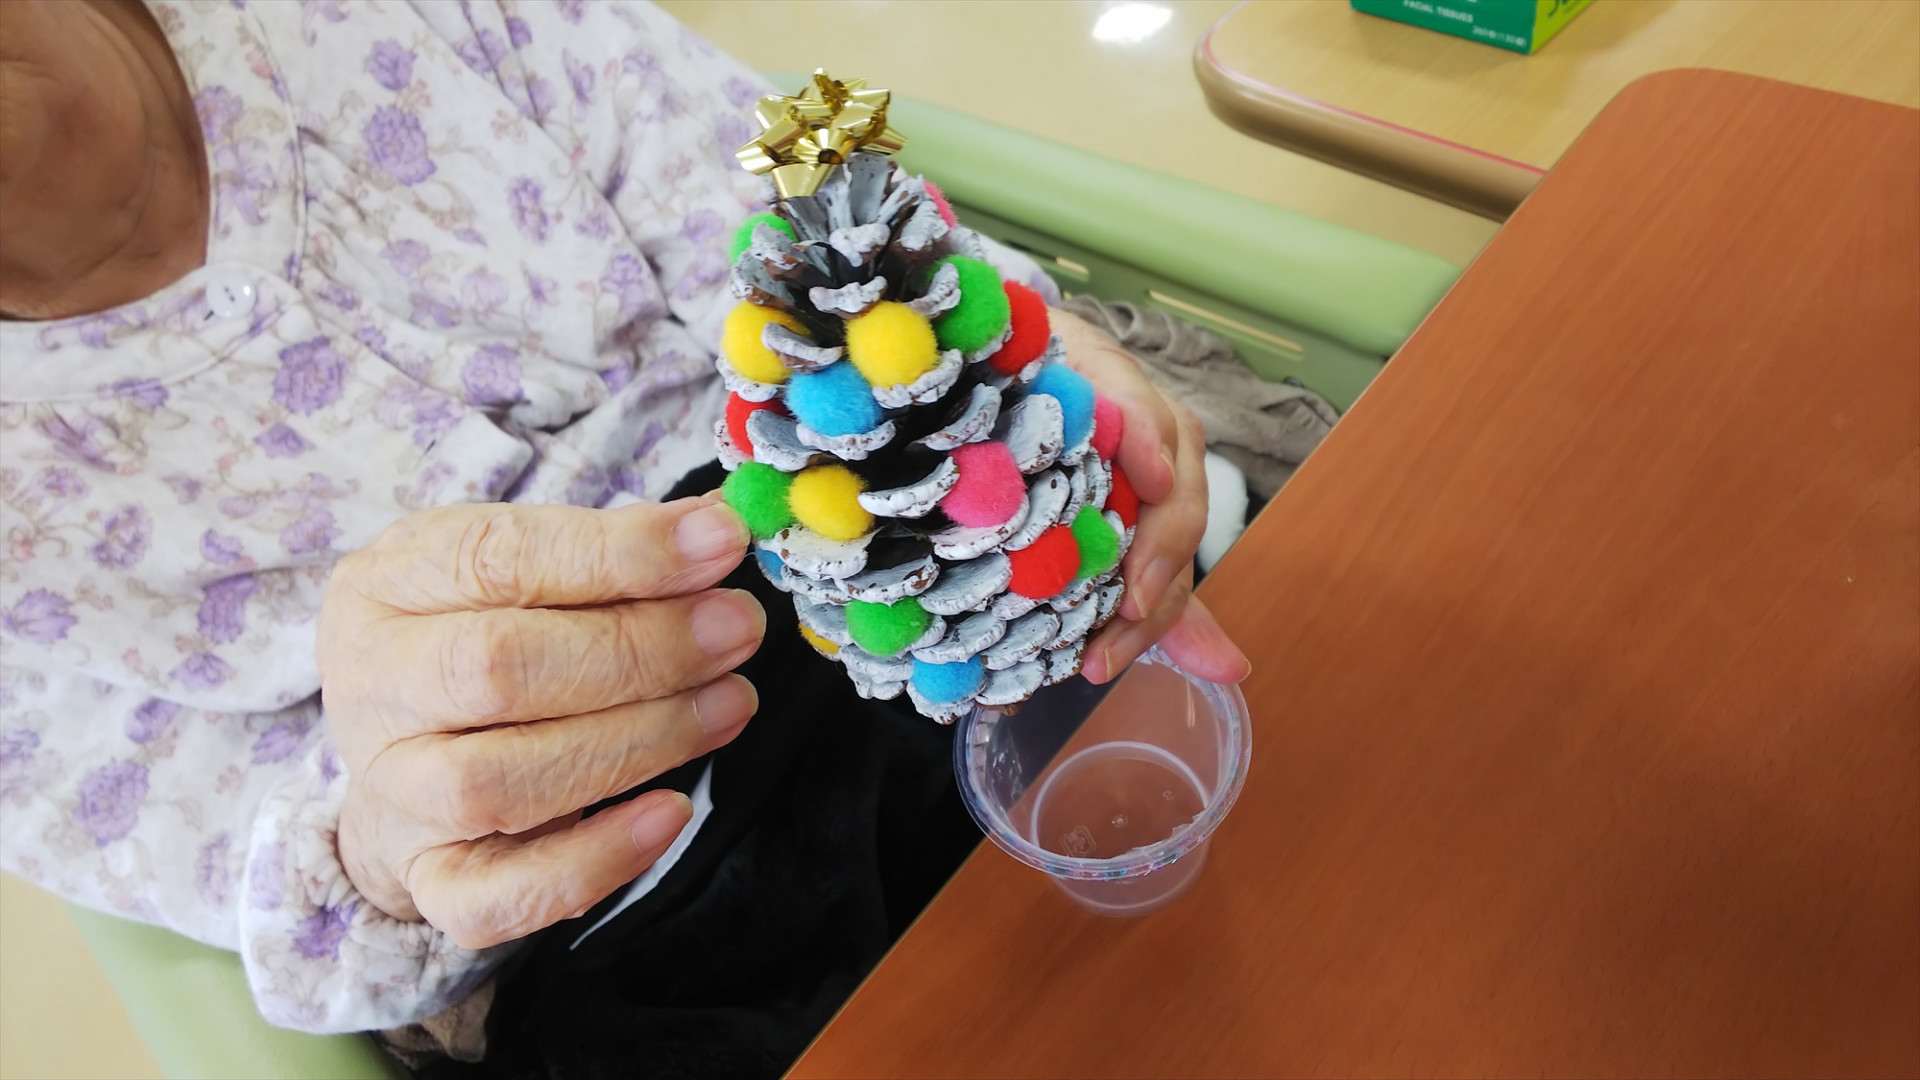 手作りクリスマスツリー | 高松市の老人ホーム・レインボー恵はブログにて施設を紹介